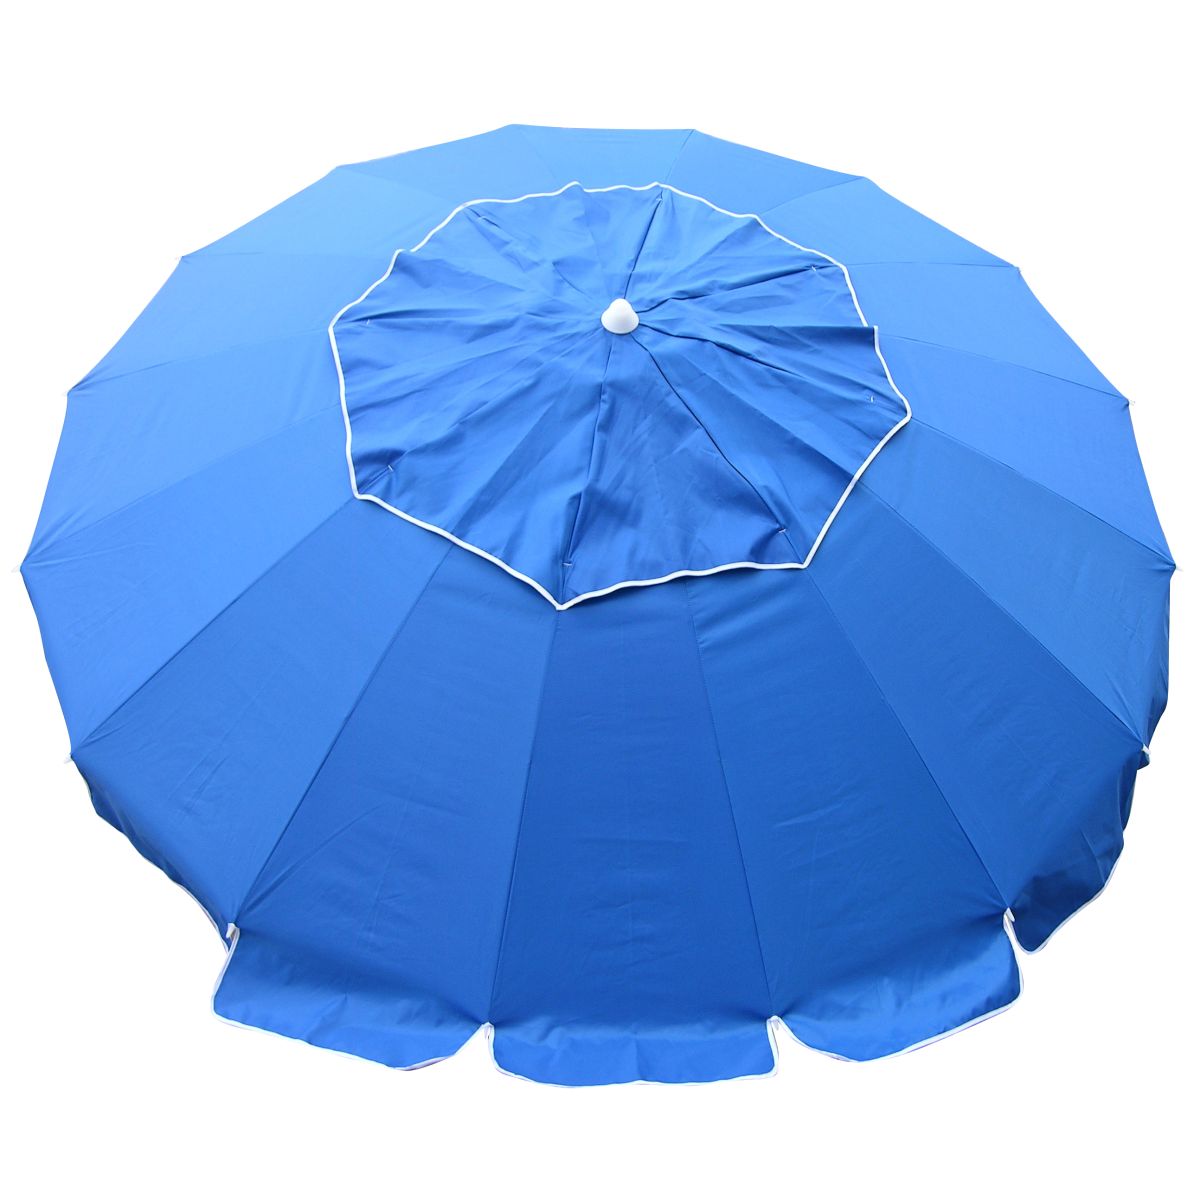 Maxibrella Beach Umbrella - Huge 8ft Canopy - Royal Blue - BeachKit